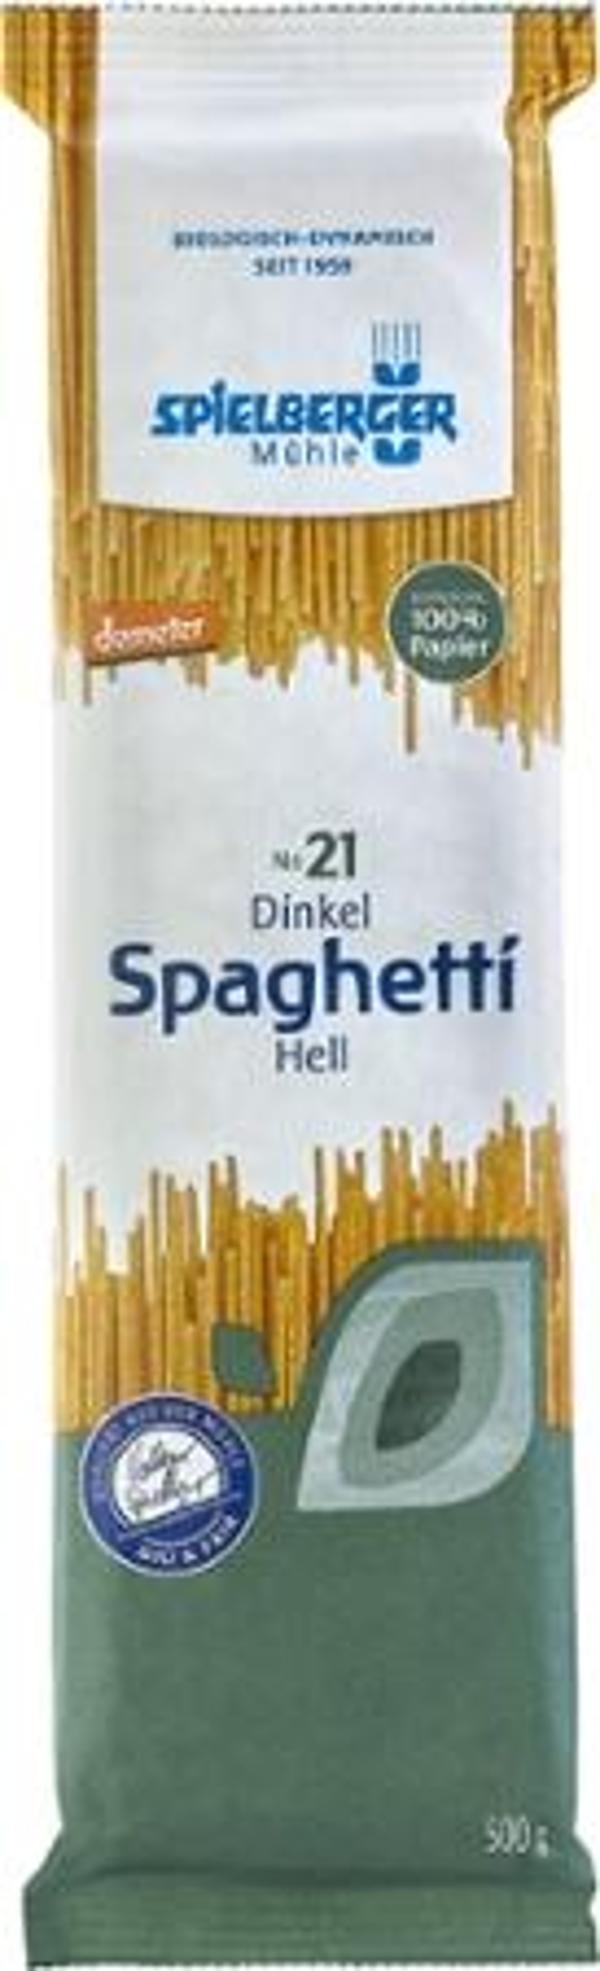 Produktfoto zu Spielberger Mühle Dinkel Spaghetti hell 500g